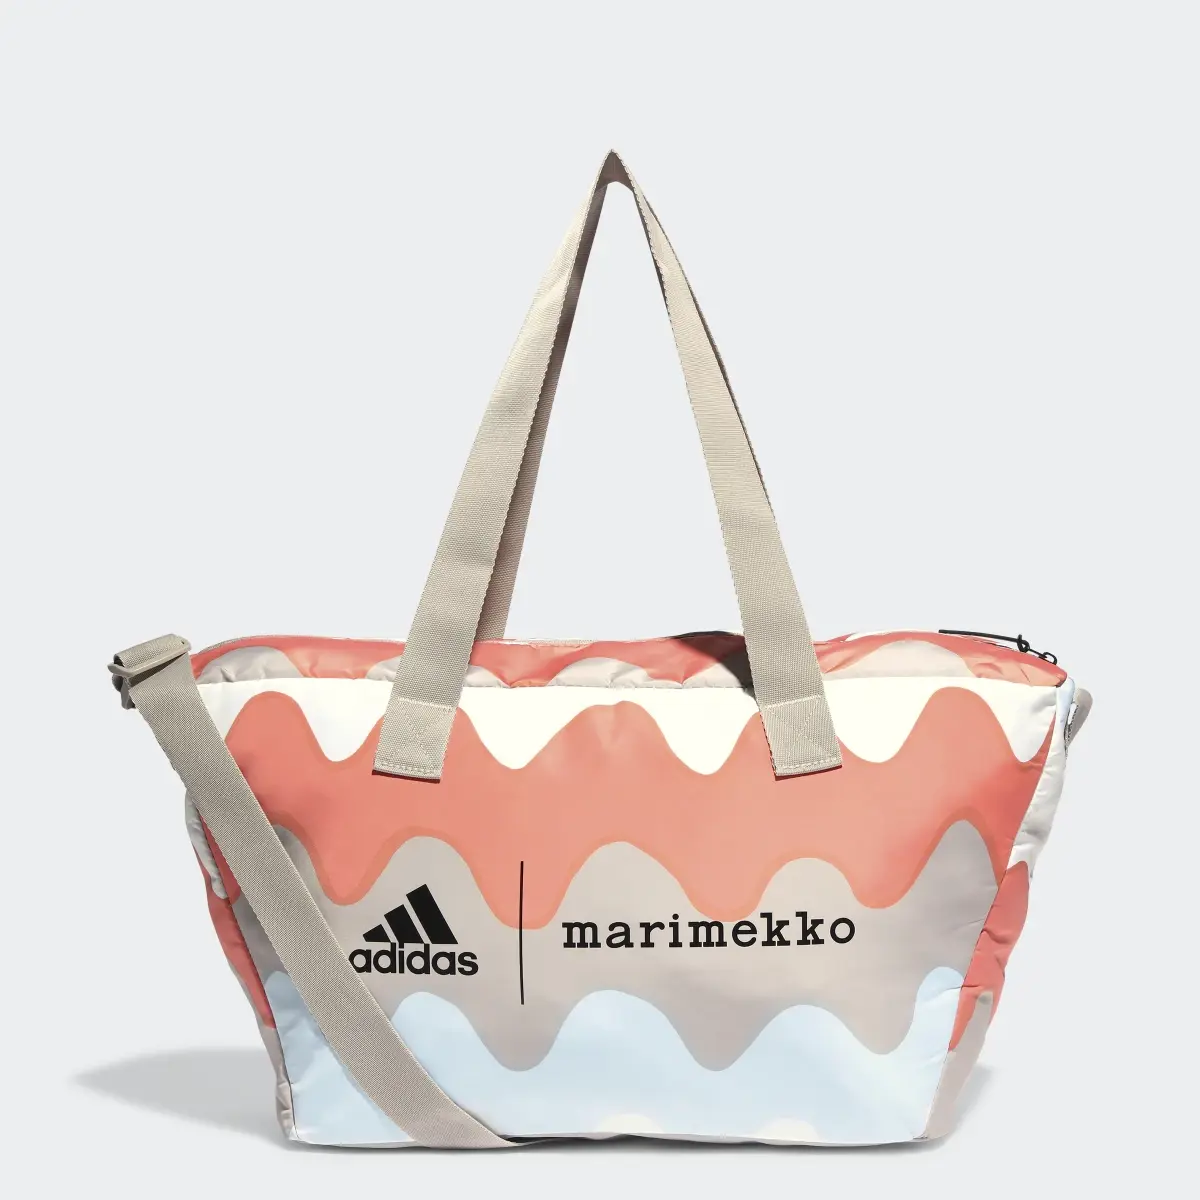 Adidas x Marimekko Shopper Designed 2 Move Training Backpack. 1